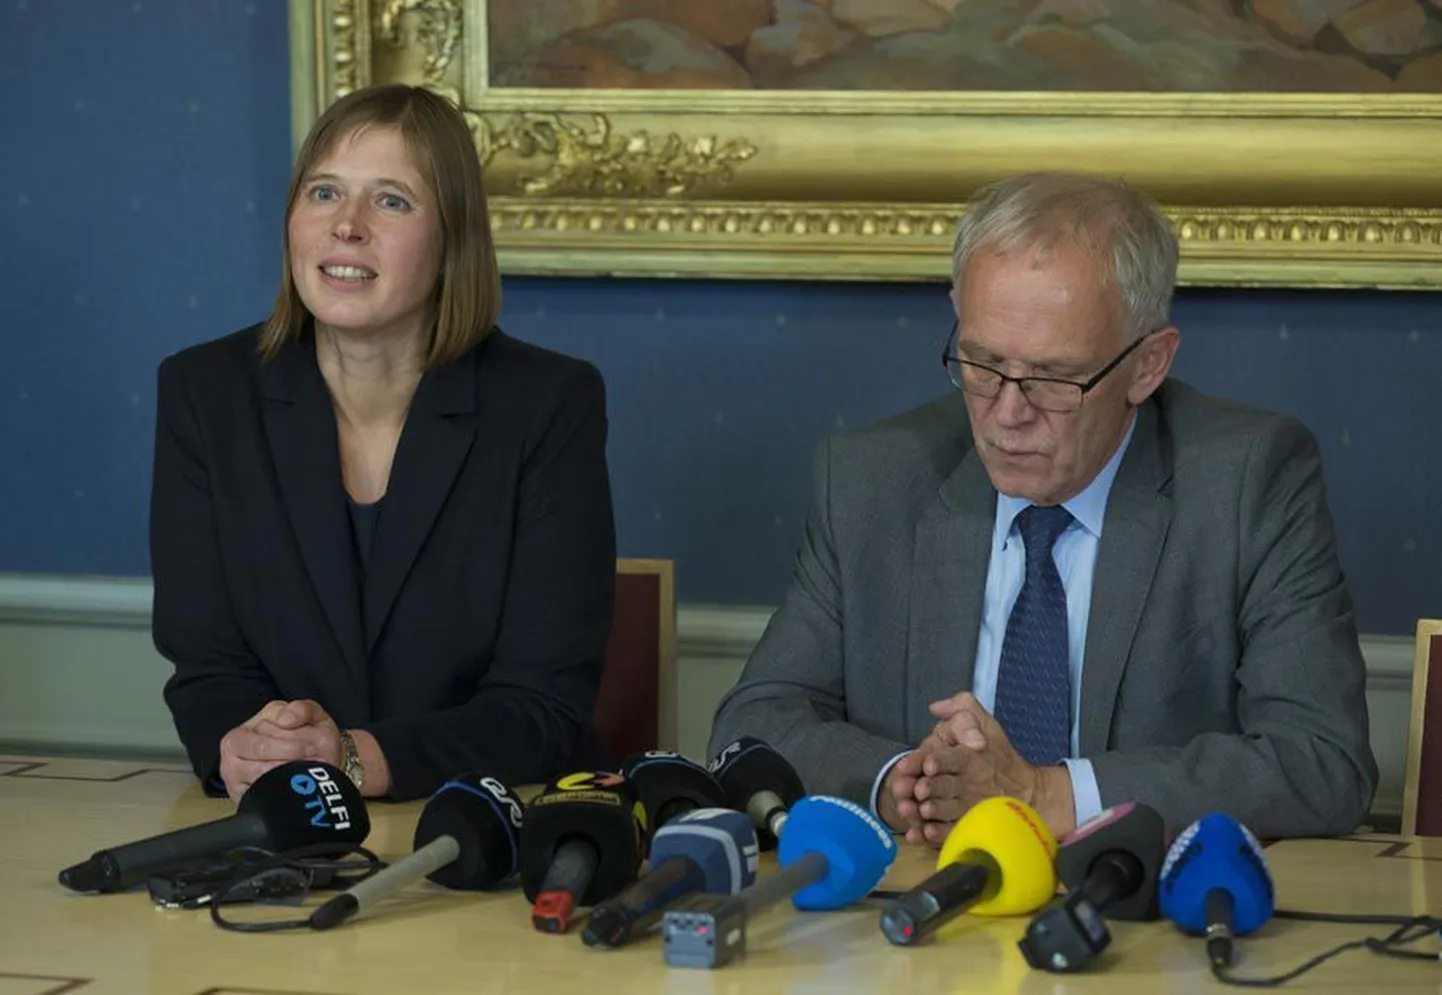 Pärast riigikogu vanematekogu pikka koosolekut pakkus riigikogu esimees Eiki Nestor välja uue presidendikandidaadi, kes on Euroopa Kontrollikoja liige Kersti Kaljulaid.